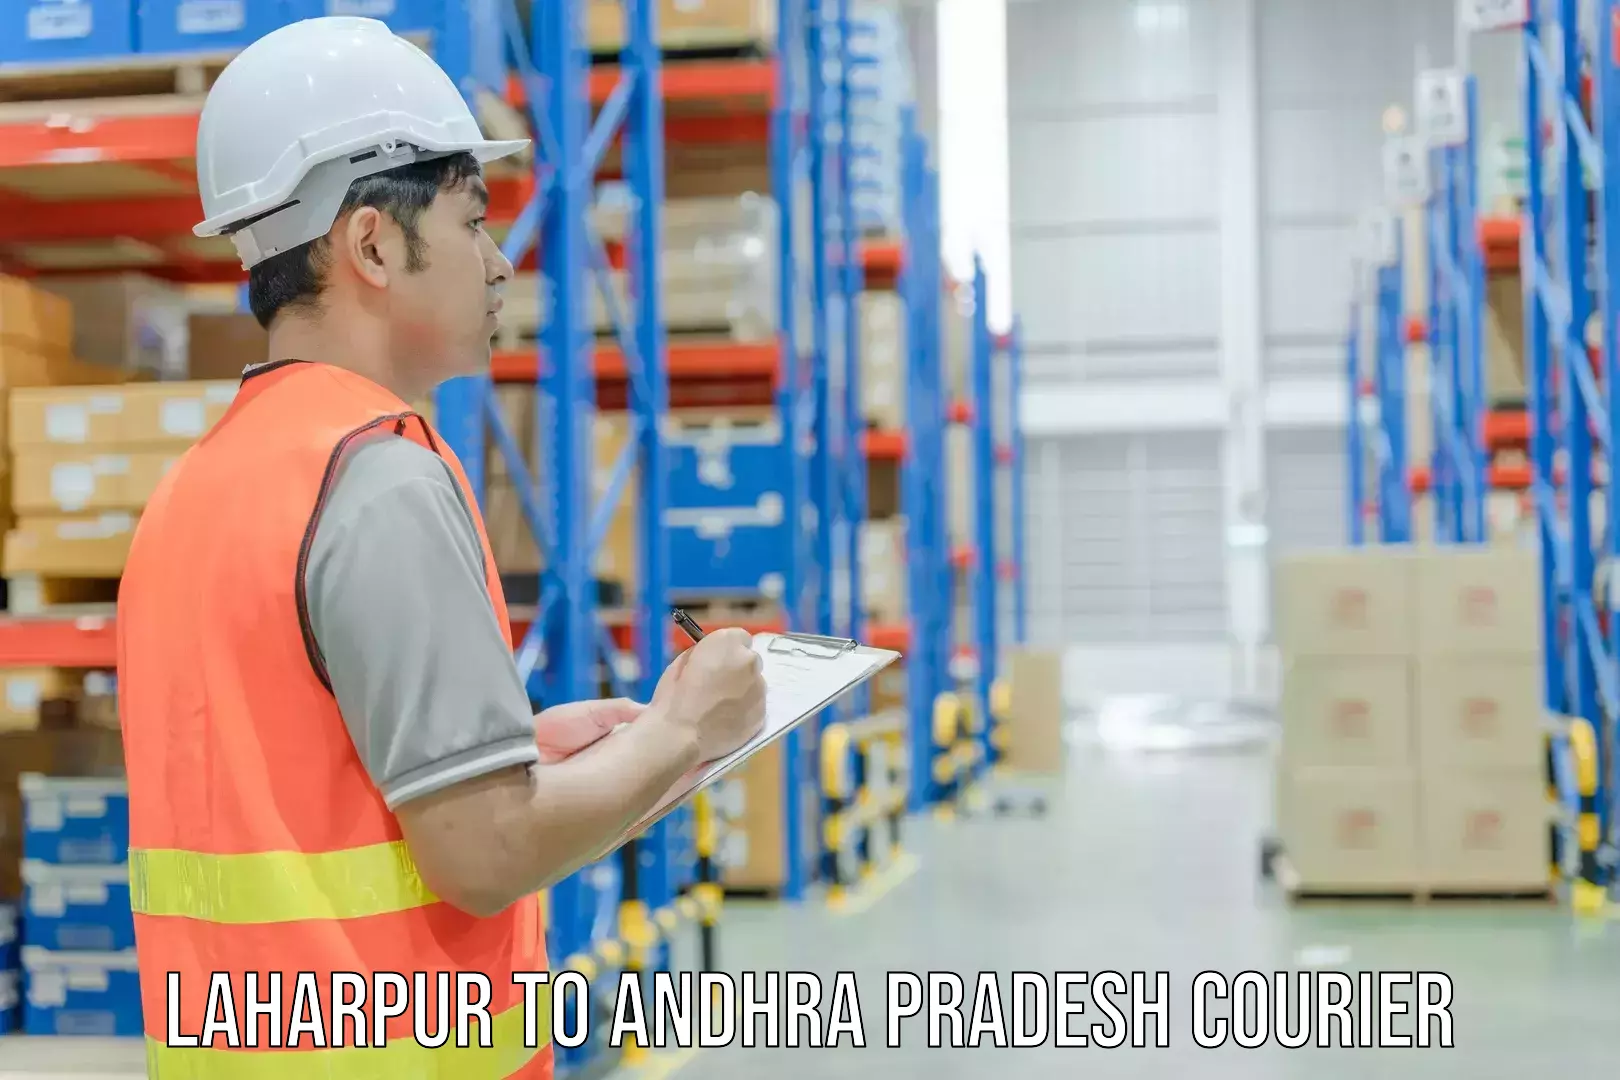 Reliable delivery network Laharpur to Udayagiri